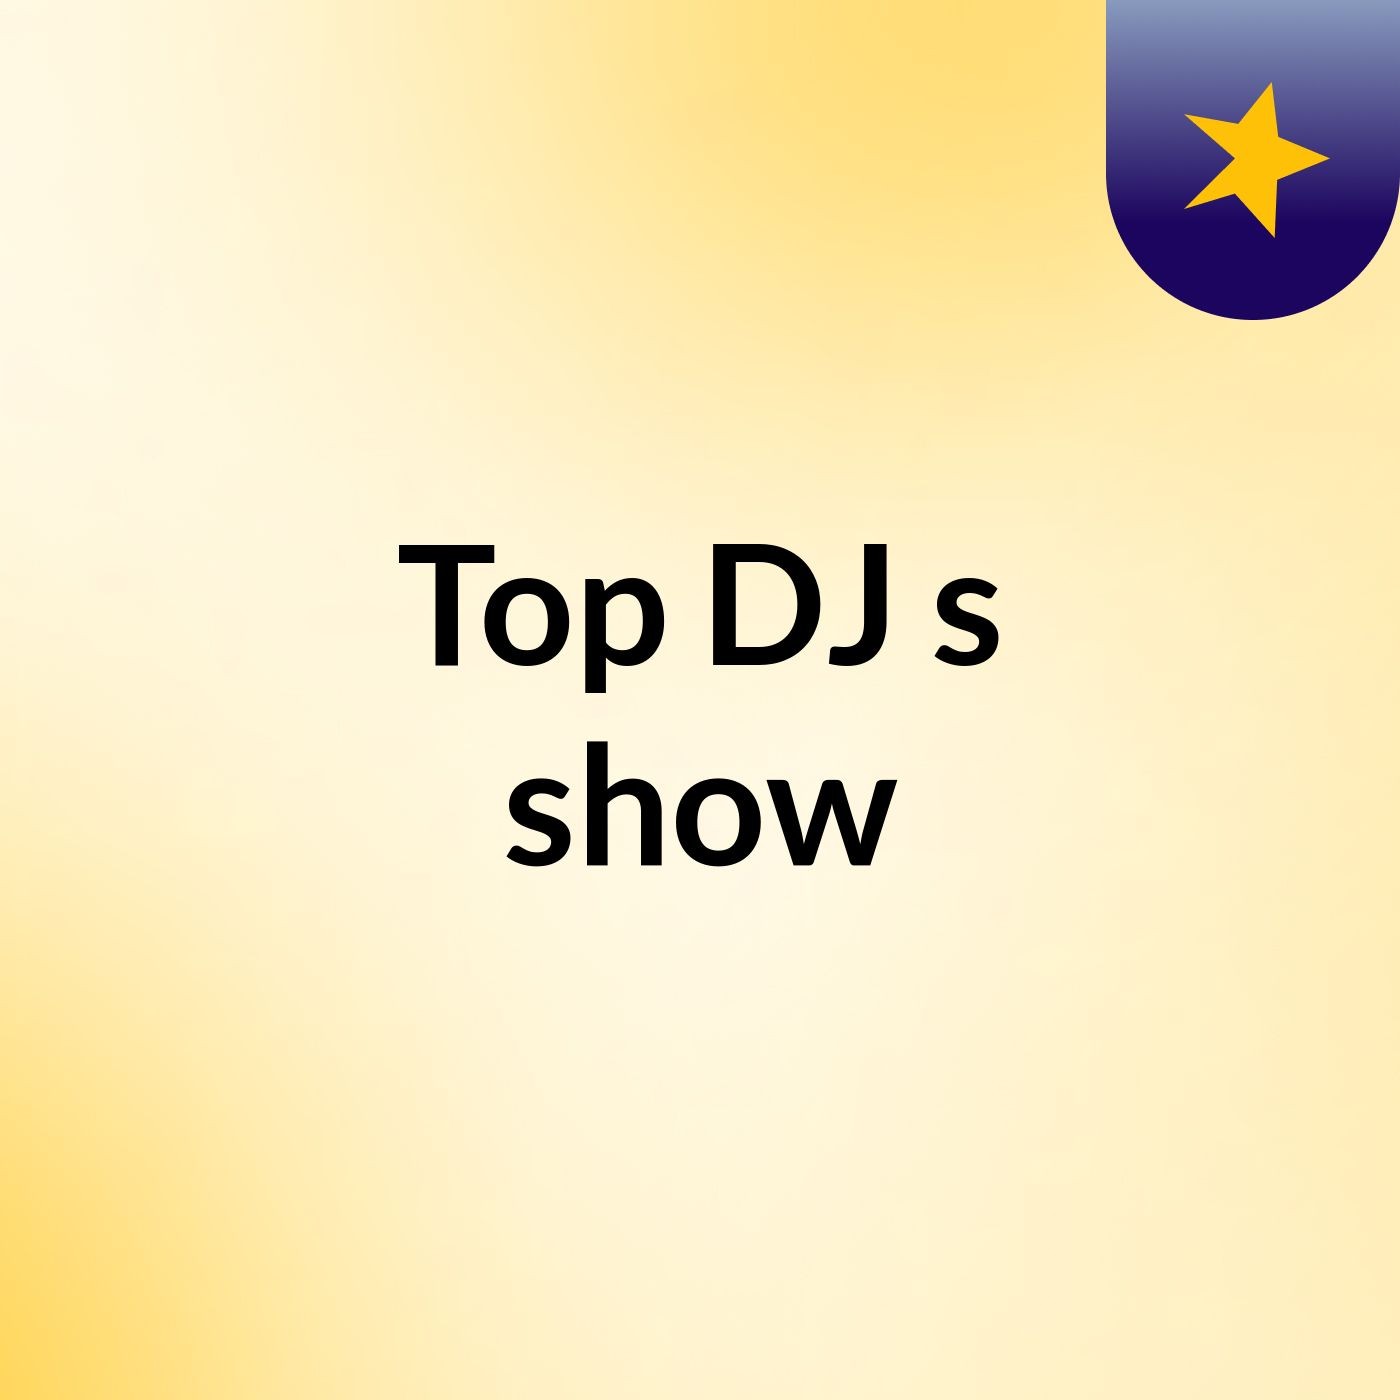 Top DJ's show